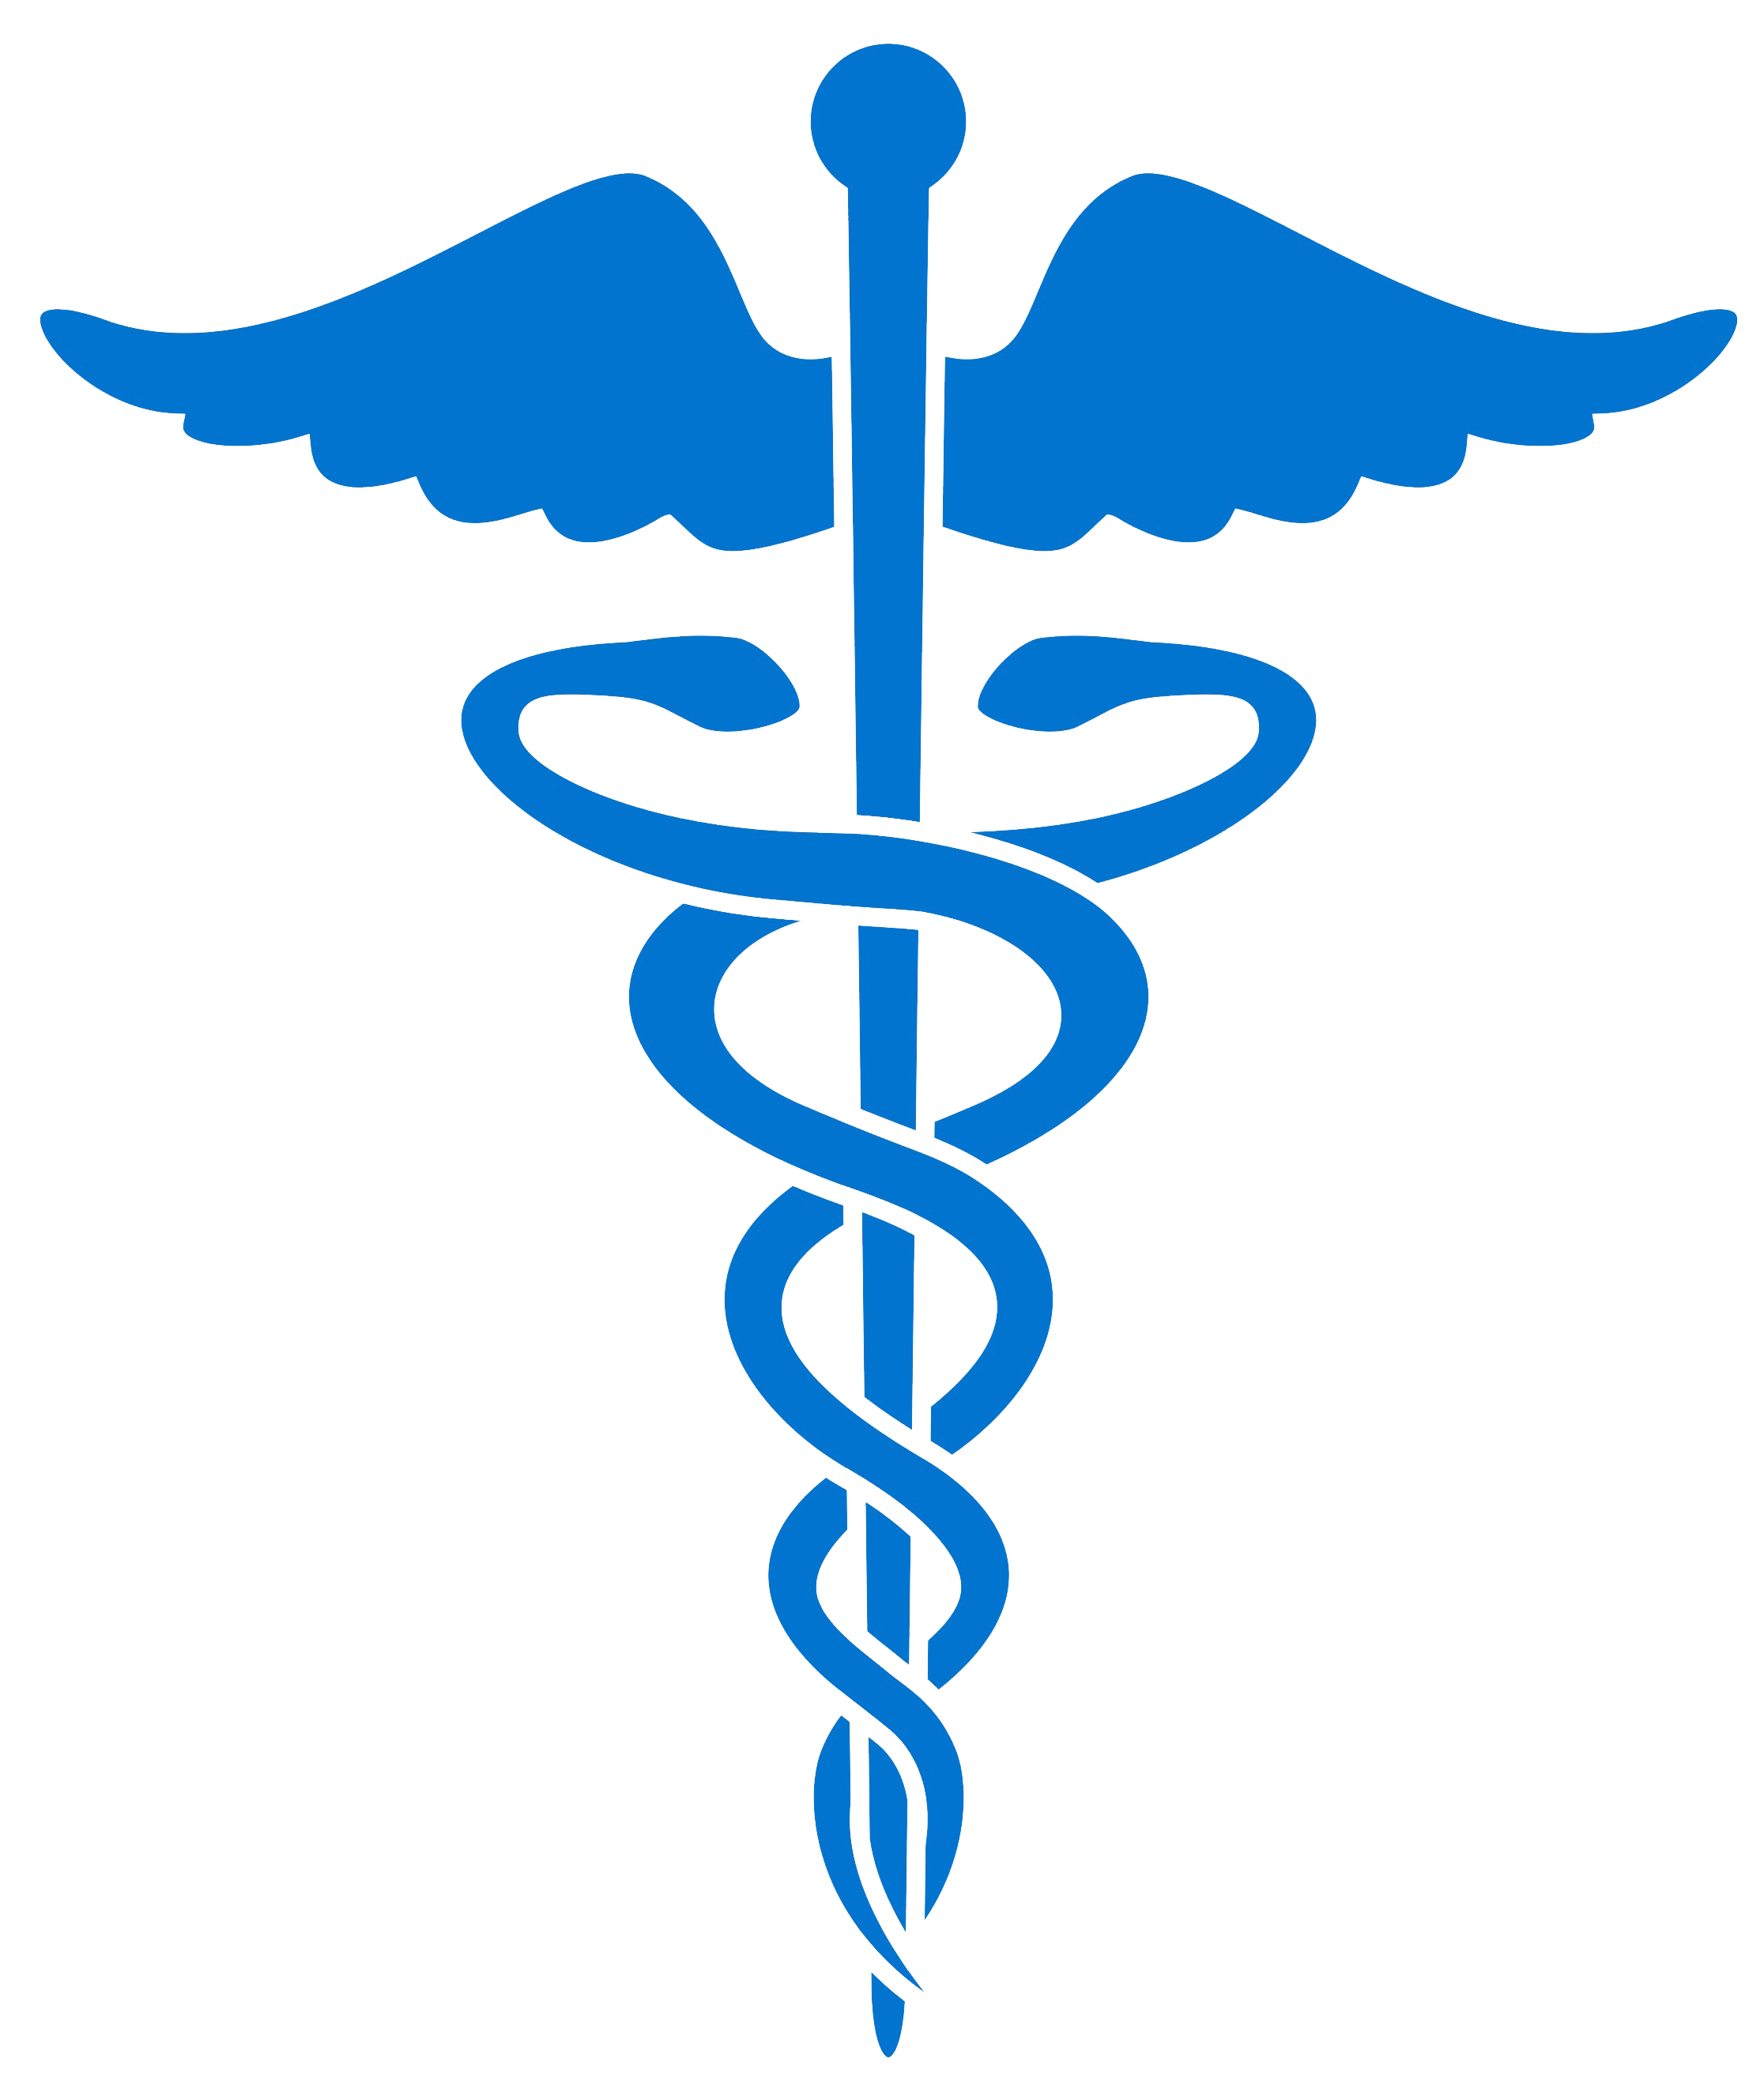 Logos For > Medical Snake Logo Blue - ClipArt Best - ClipArt Best